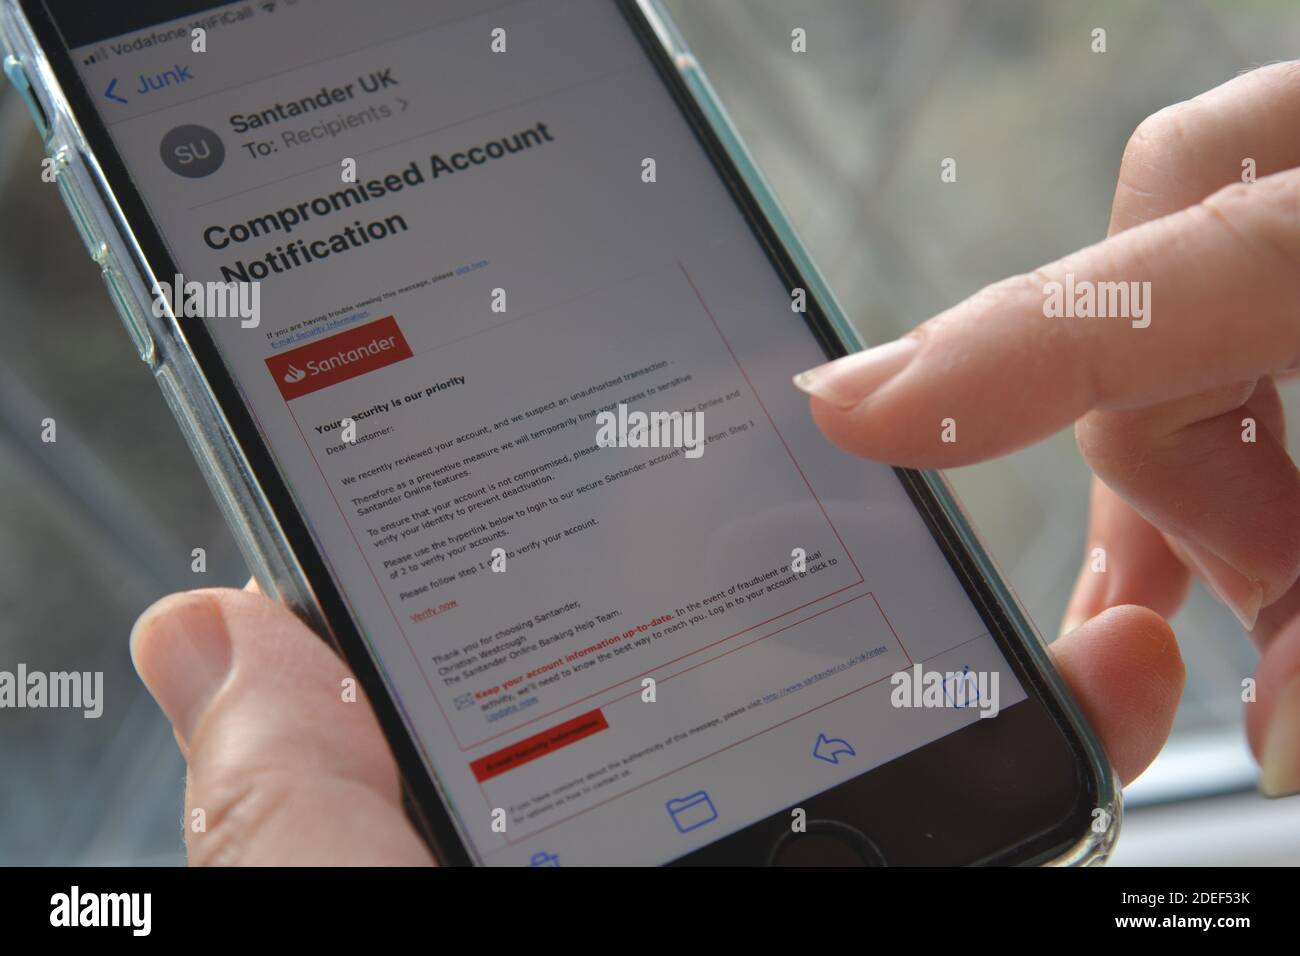 Telefono cellulare in mano alla donna con un messaggio e-mail di phishing/truffa, che si suppone provenga dalla banca Santander, visualizzato sullo schermo Foto Stock